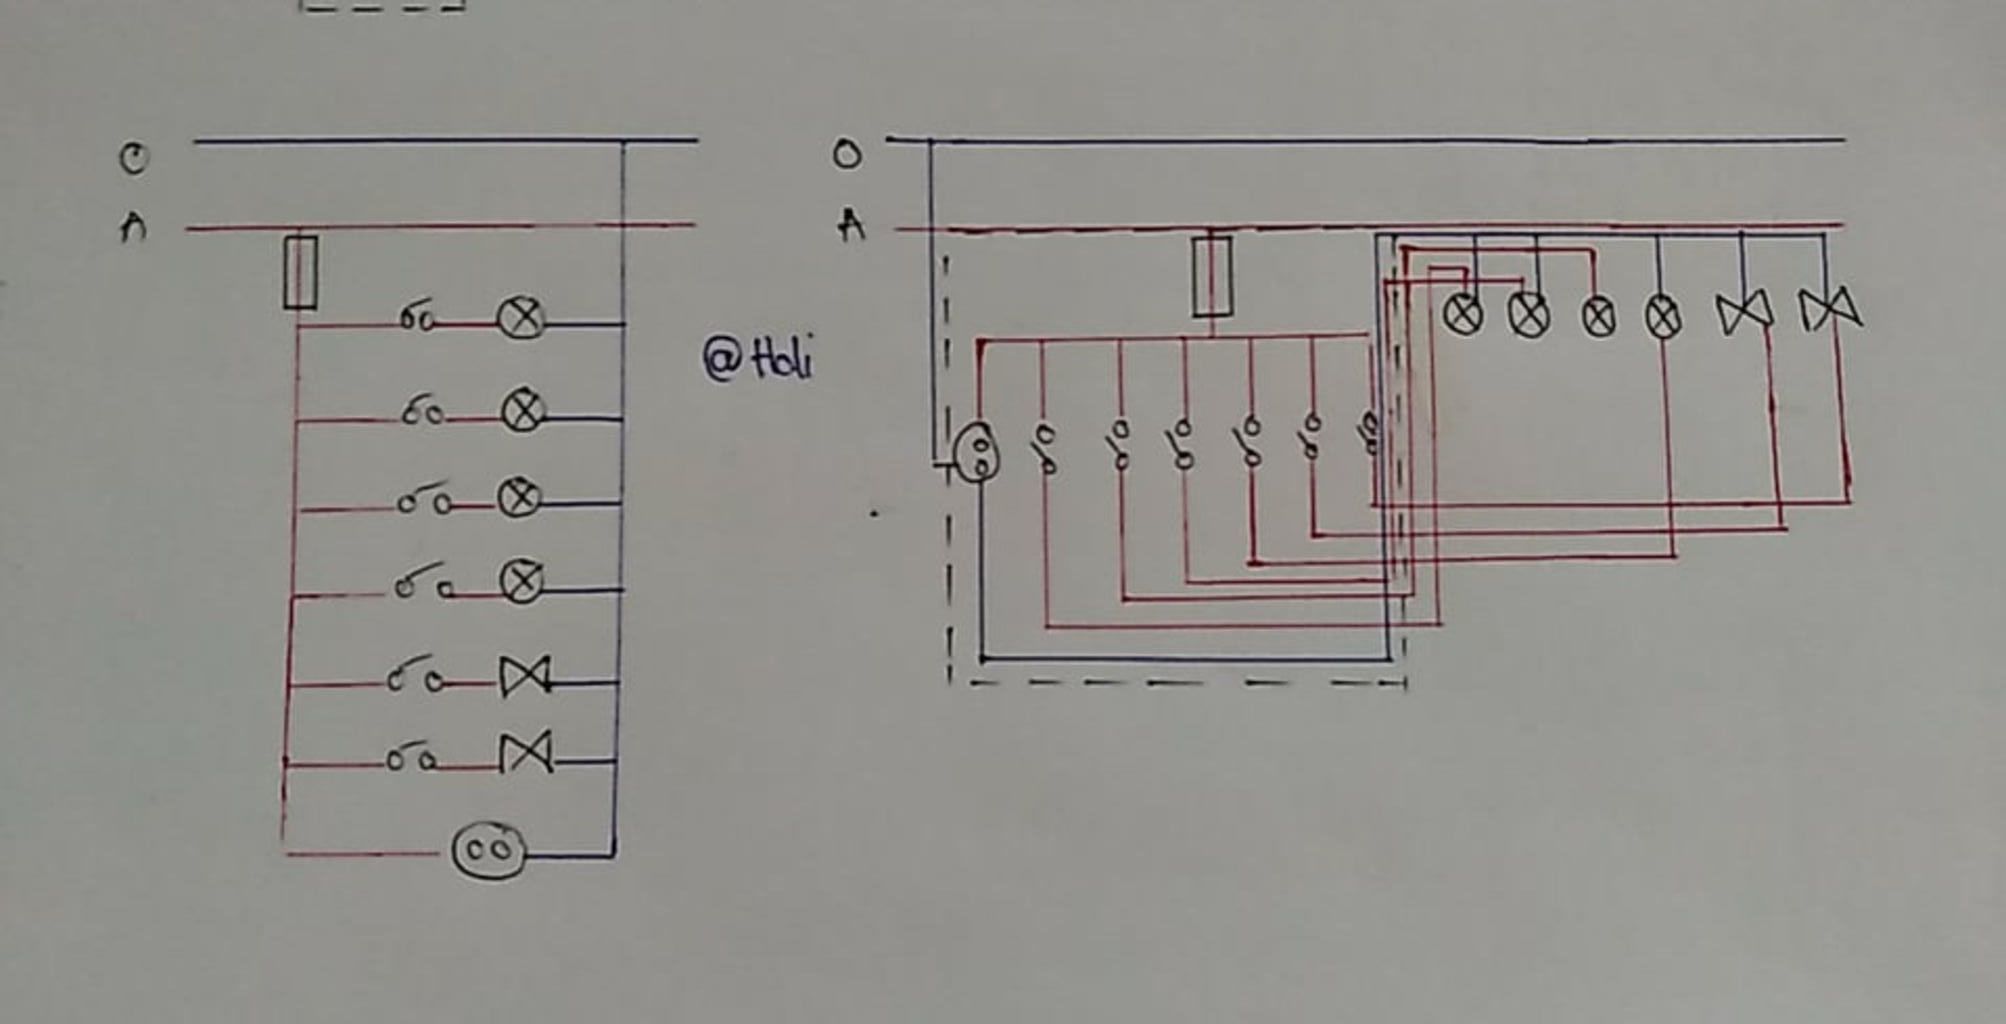 Xem sơ đồ nguyên lí và lắp đặt mạch điện trong hình ảnh liên quan để hiểu rõ hơn về cấu trúc của thiết bị điện. Bạn sẽ khám phá được nhiều kiến thức thú vị và bổ ích.